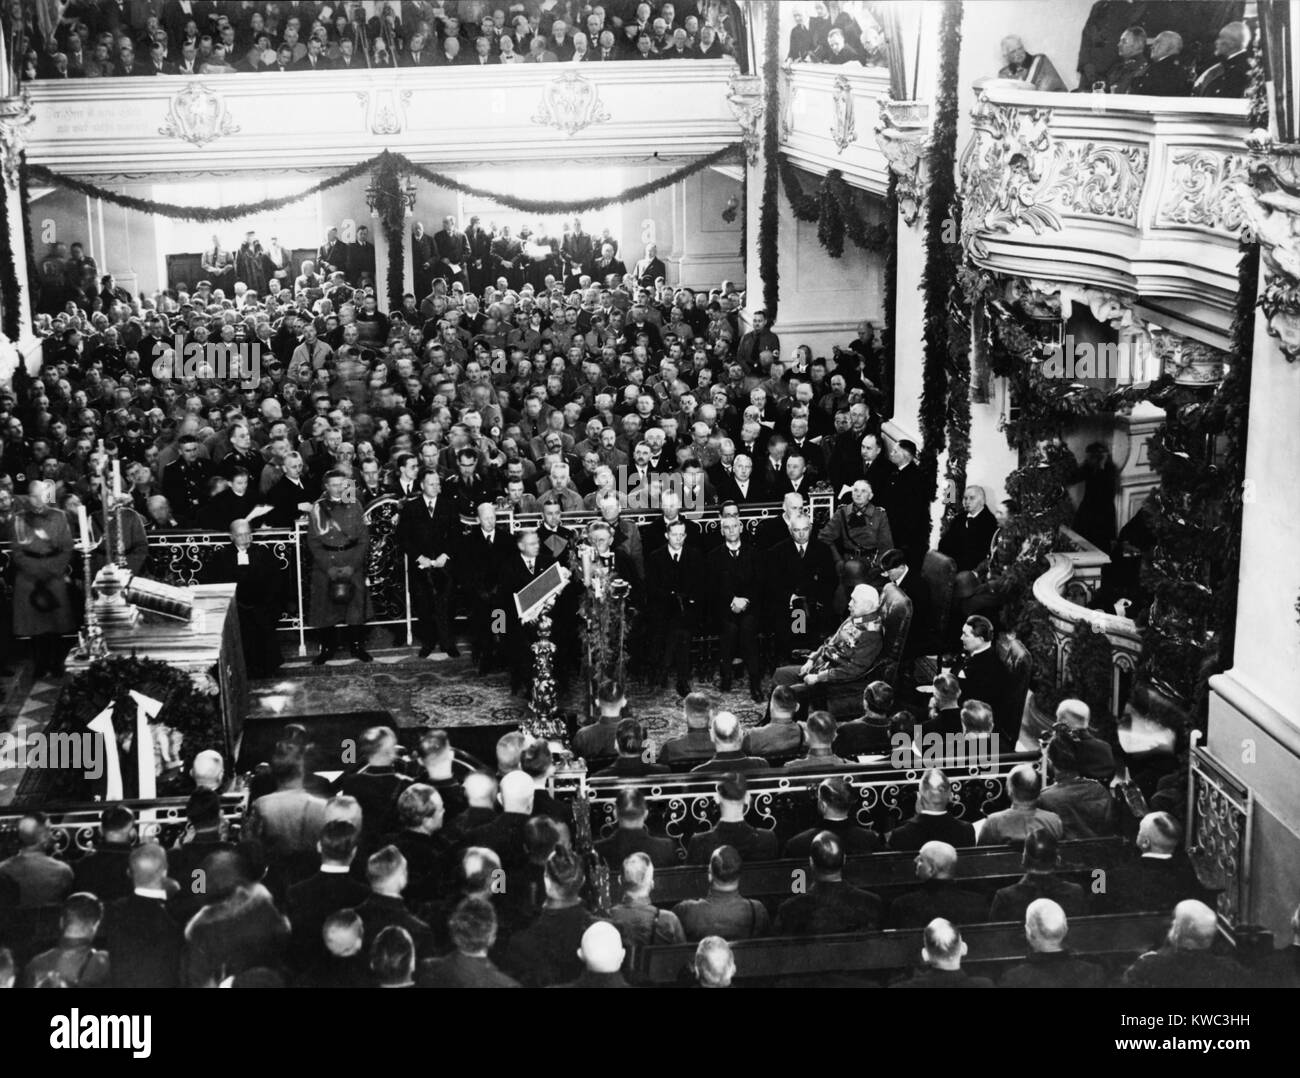 Paul von Hindenburg, Adolf Hitler et Hermann Goering (bas à droite), le 21 mars 1933. Ils étaient dans l'église de la garnison de Potsdam pour cérémonies ouverture de la session du Reichstag. Hitler a été nommé chancelier de l'Allemagne le 30 janvier 1933. (BSLOC   2015 14 11) Banque D'Images